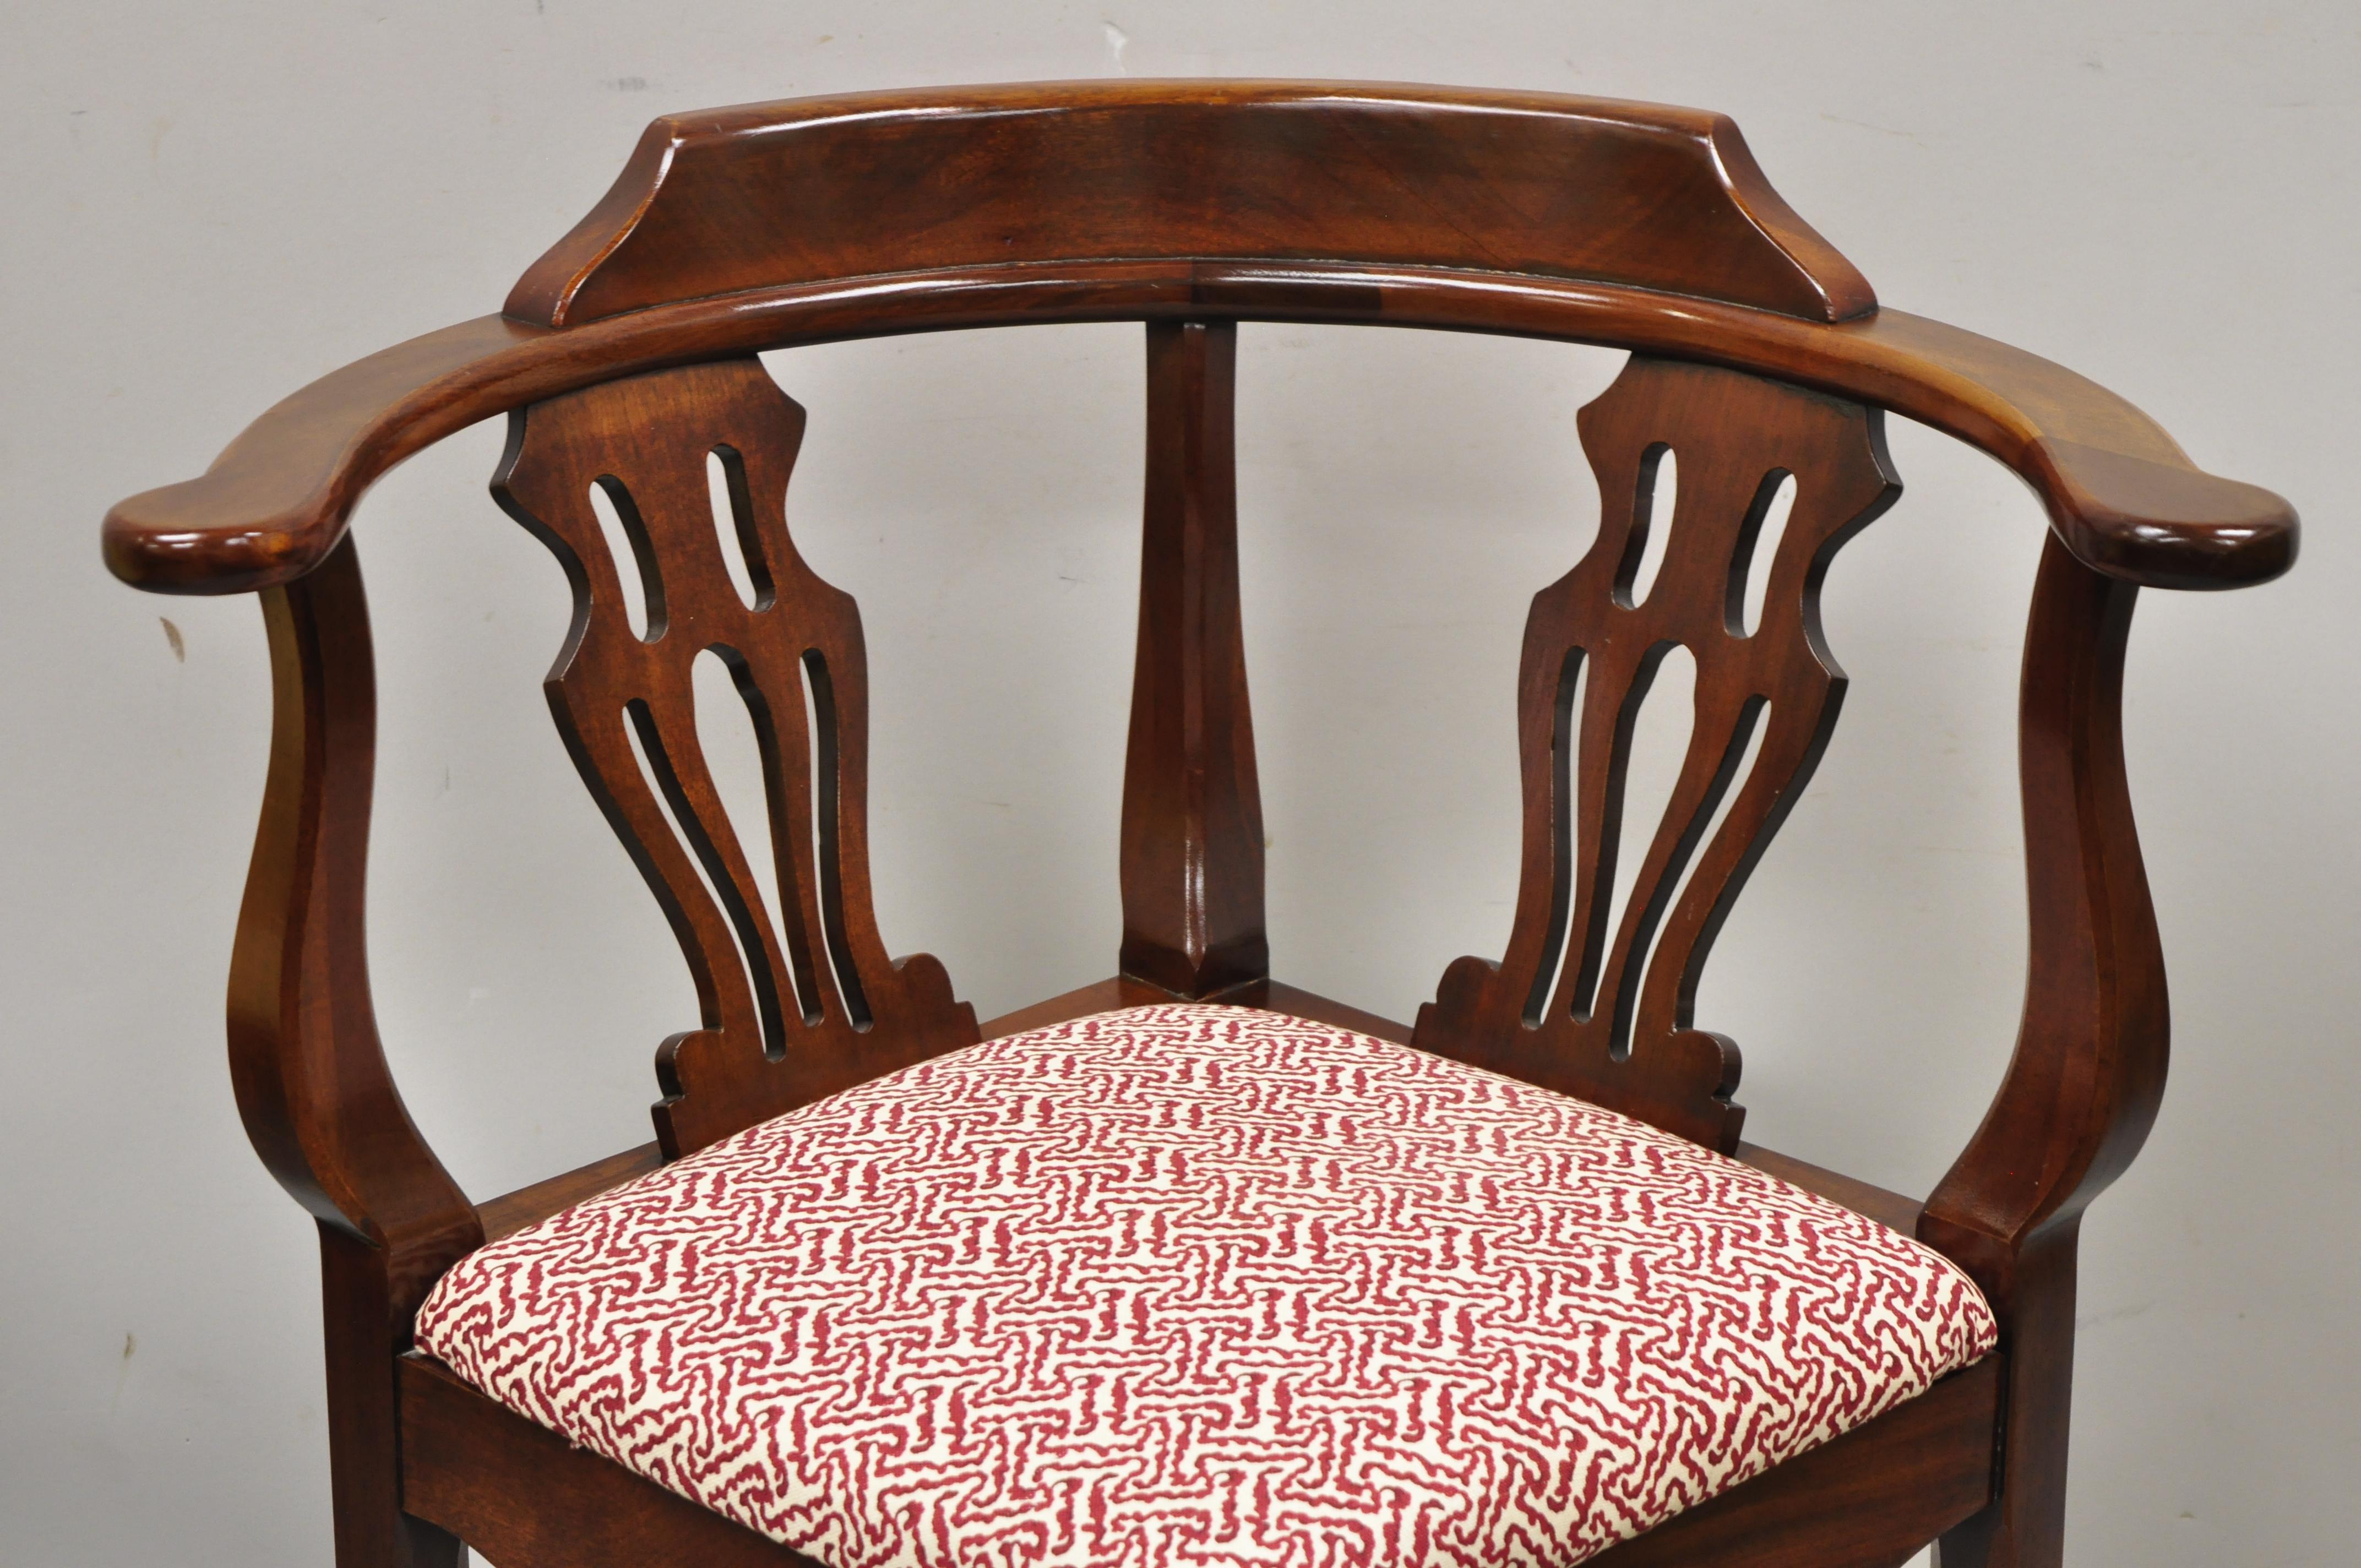 Chaise d'angle vintage Ross Statesville en acajou de style géorgien Chippendale. Cet article se caractérise par une construction en bois massif, des détails joliment sculptés, un artisanat américain de qualité, une étiquette originale, un style et